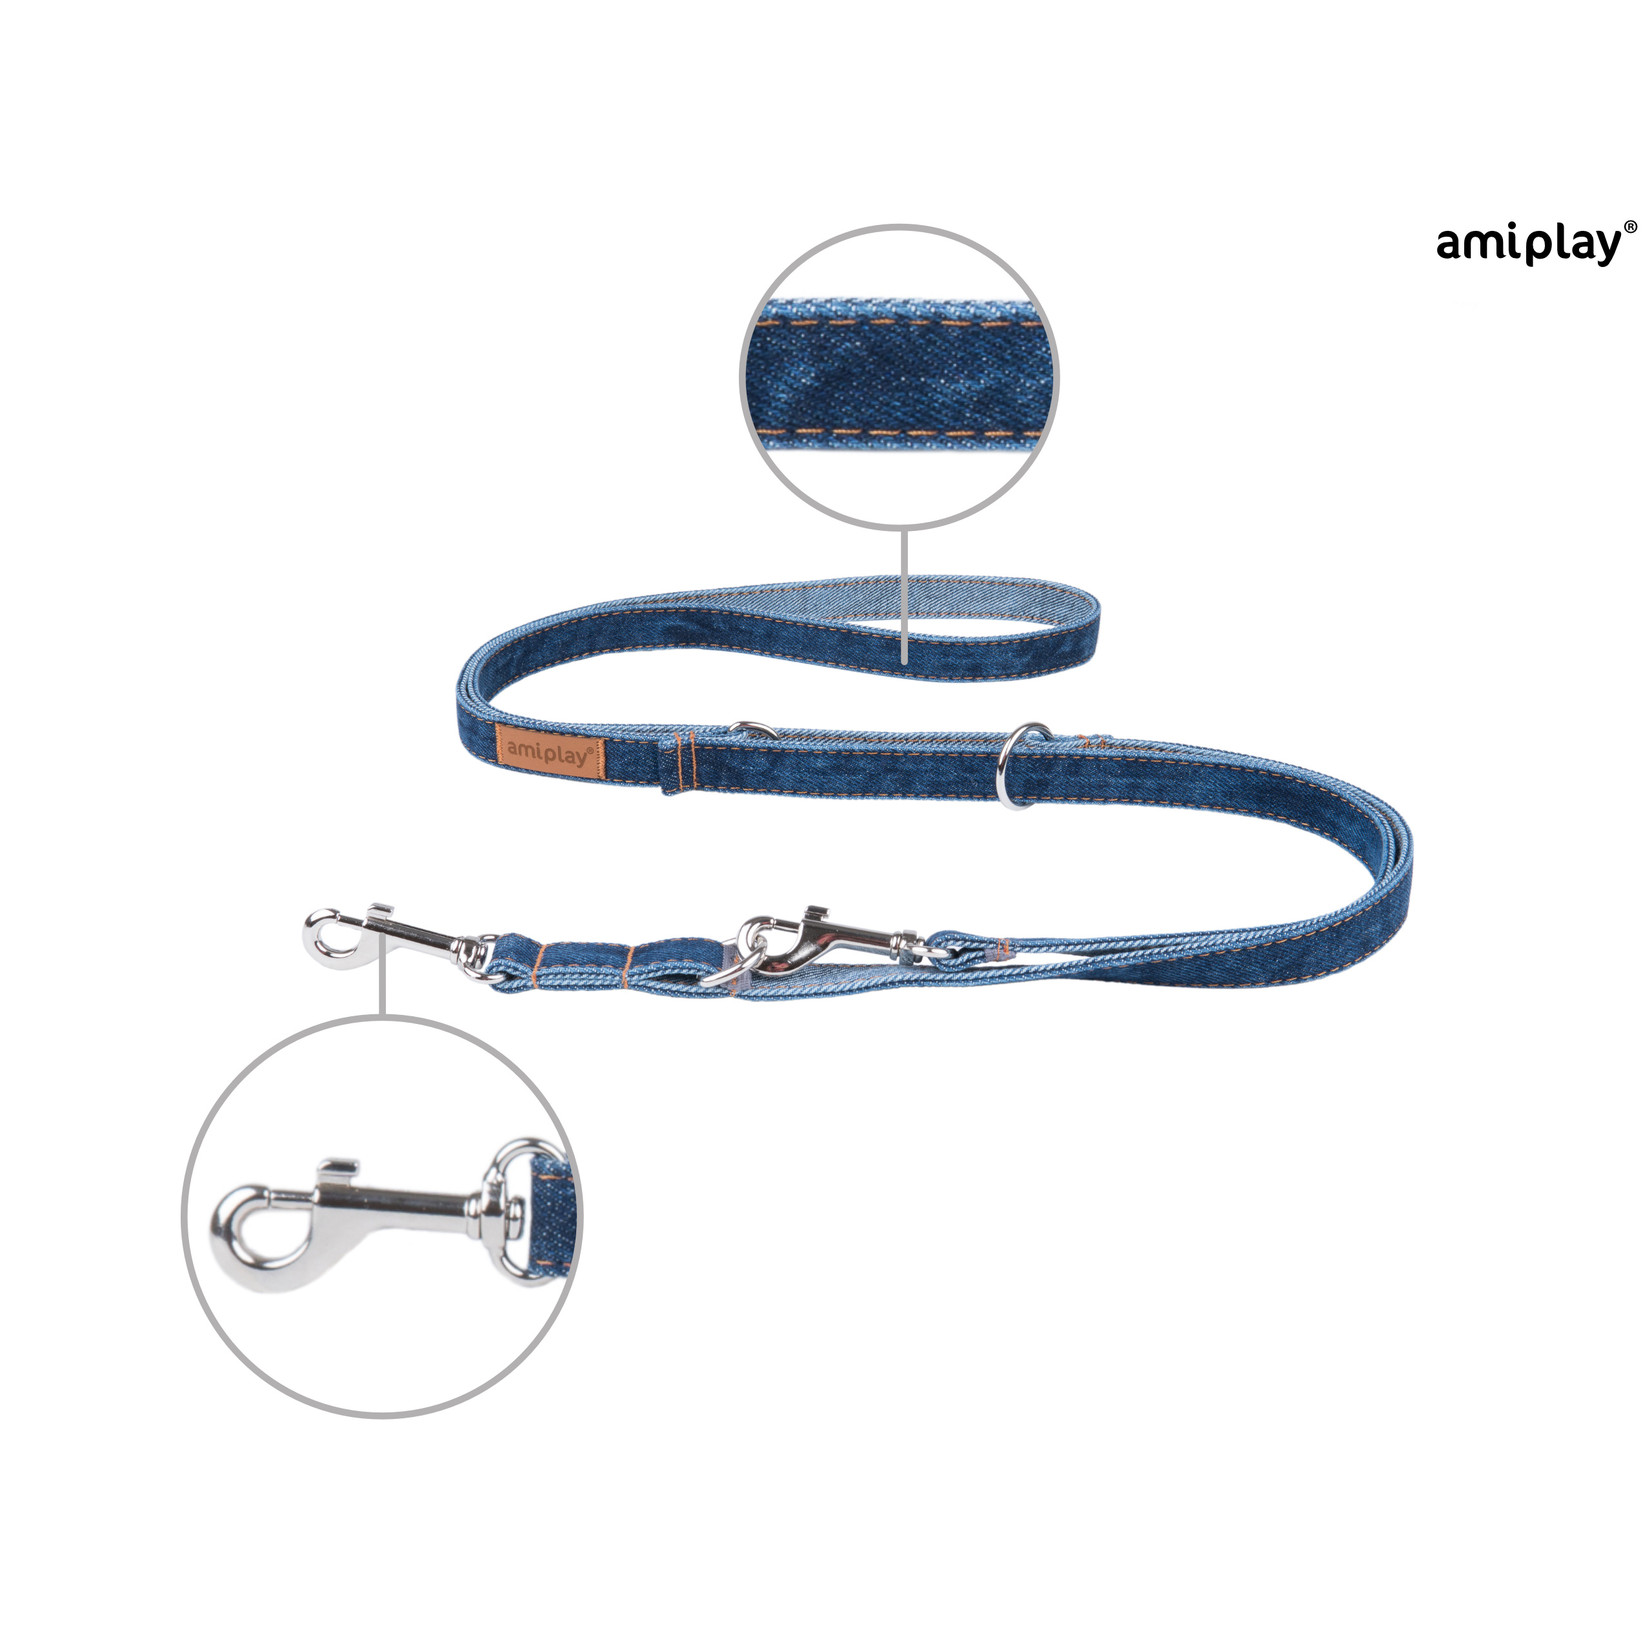 Amiplay Leiband verstelbaar 6in1 Denim donker blauw  maat-M / 100-200x1,5cm